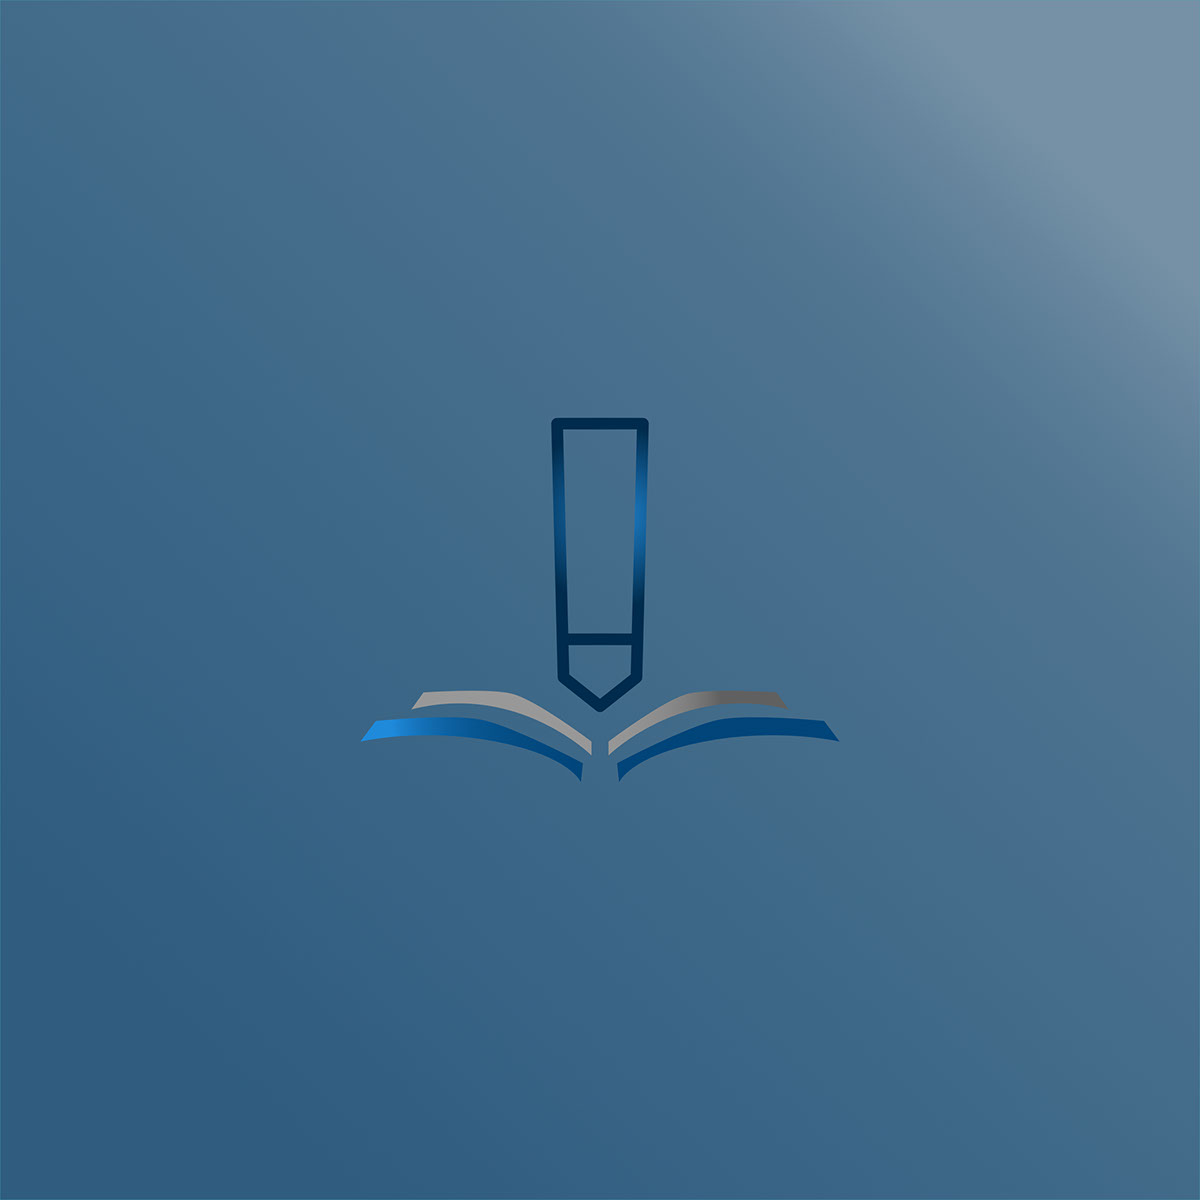 pencil or book logo rendition image